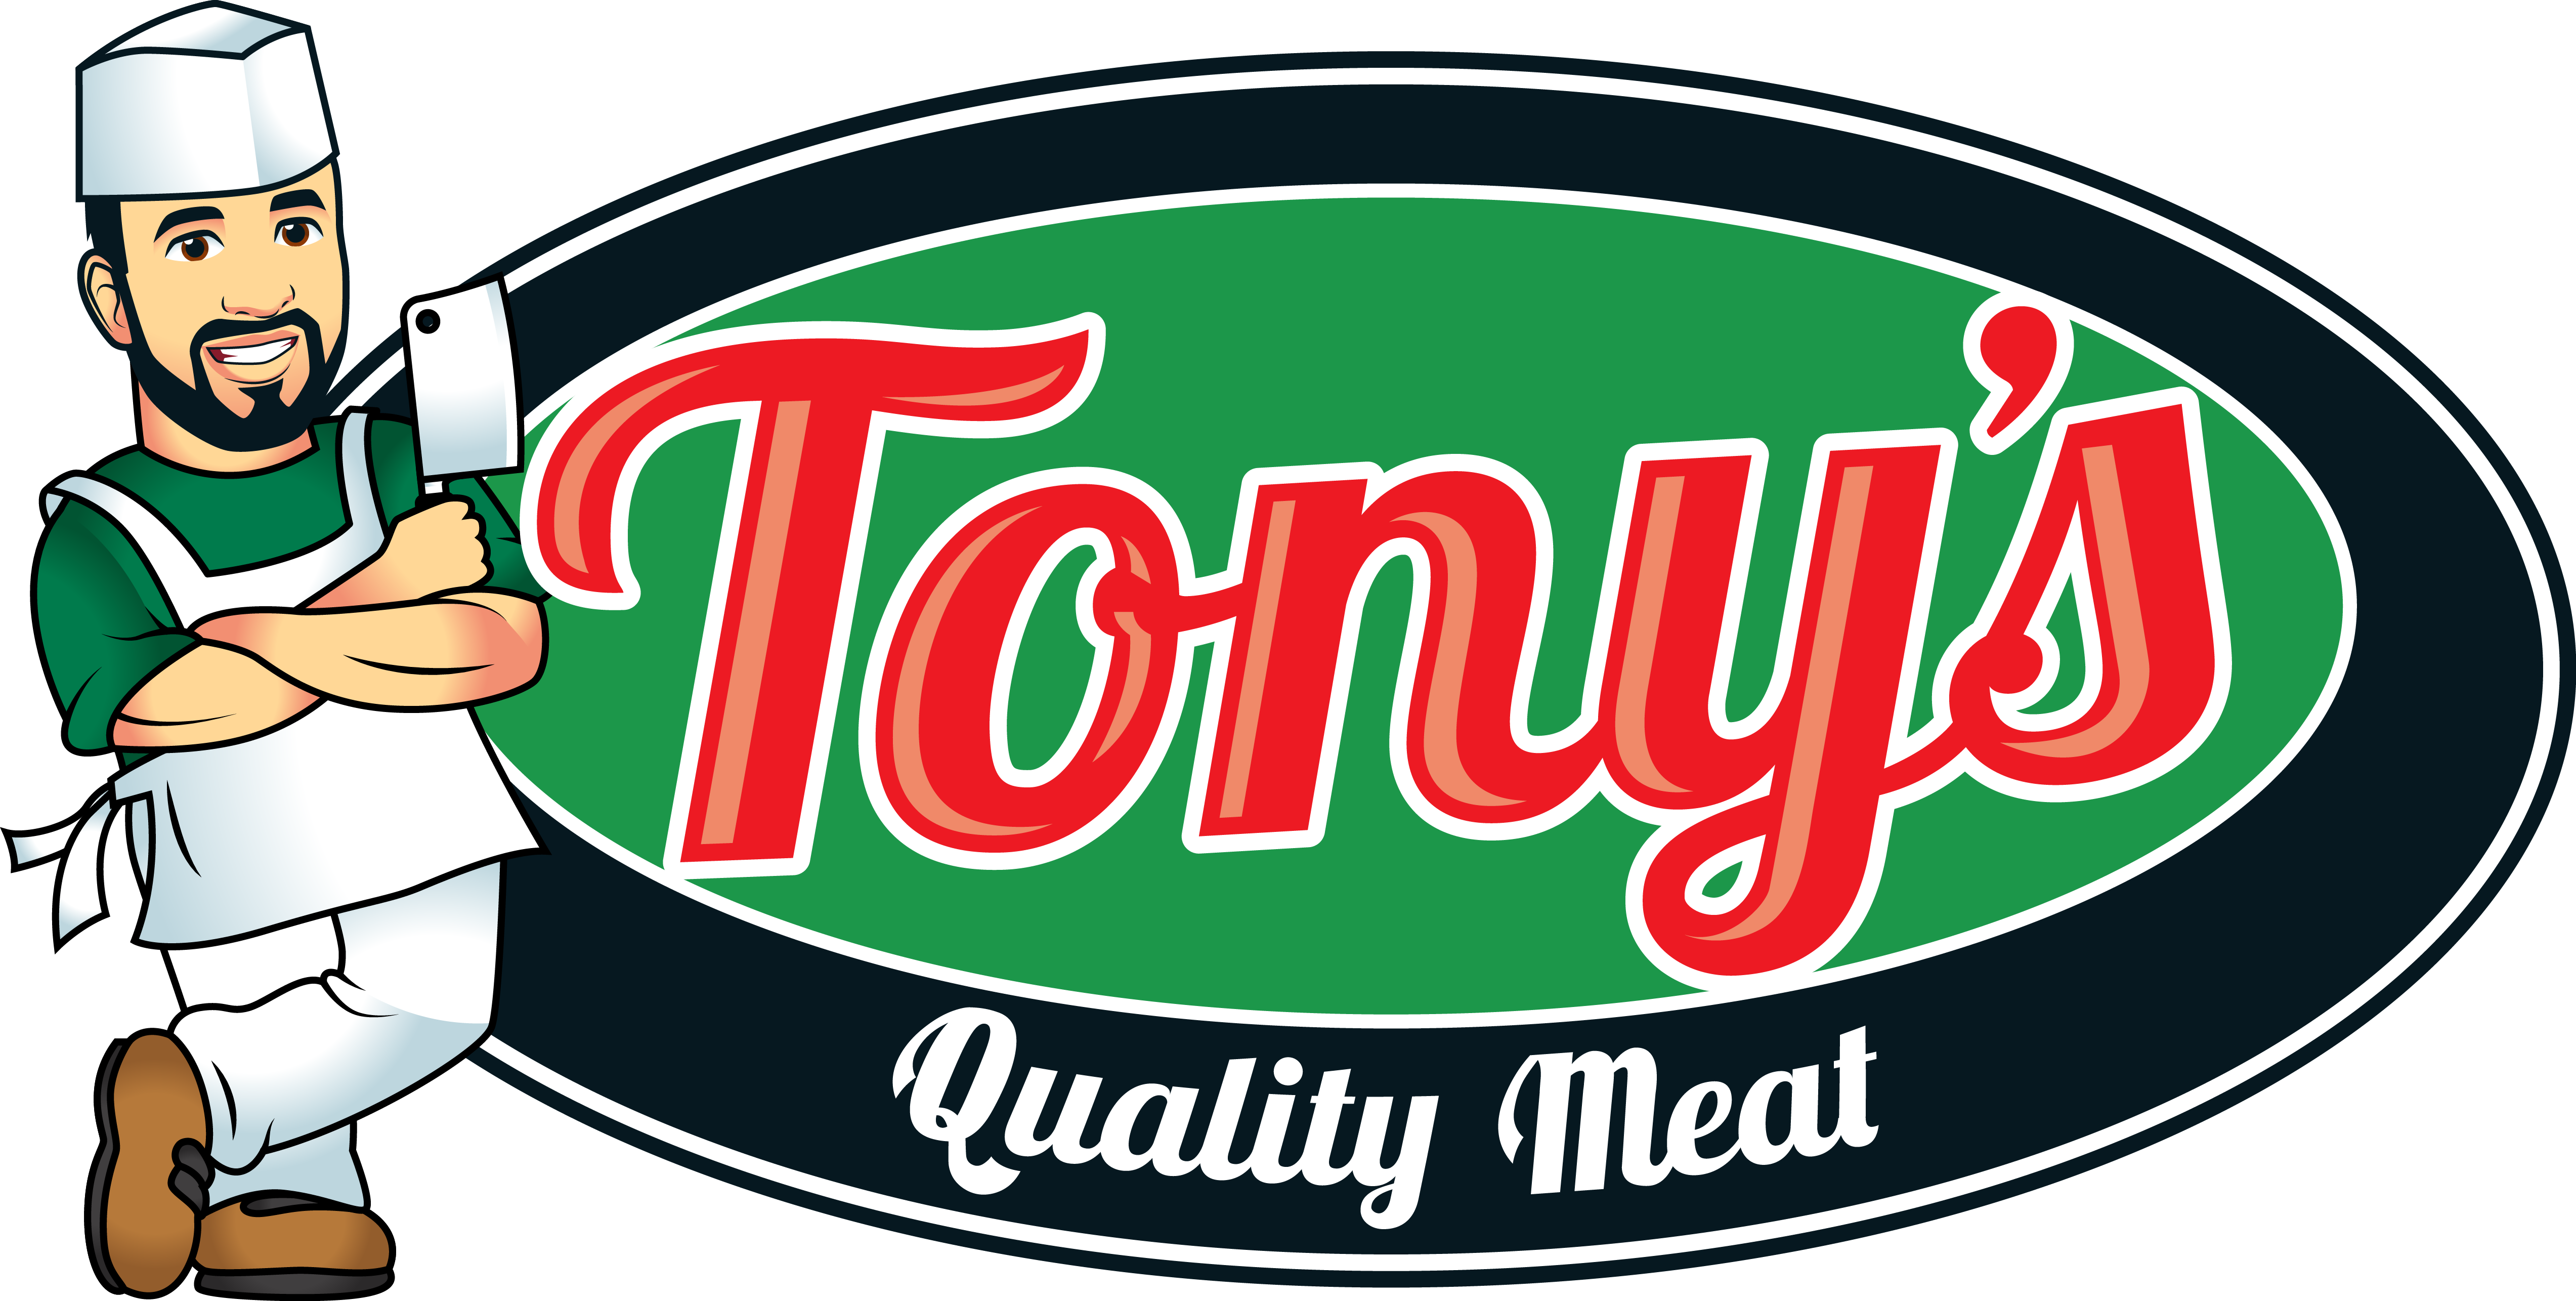 Tony's Quality Meat logo